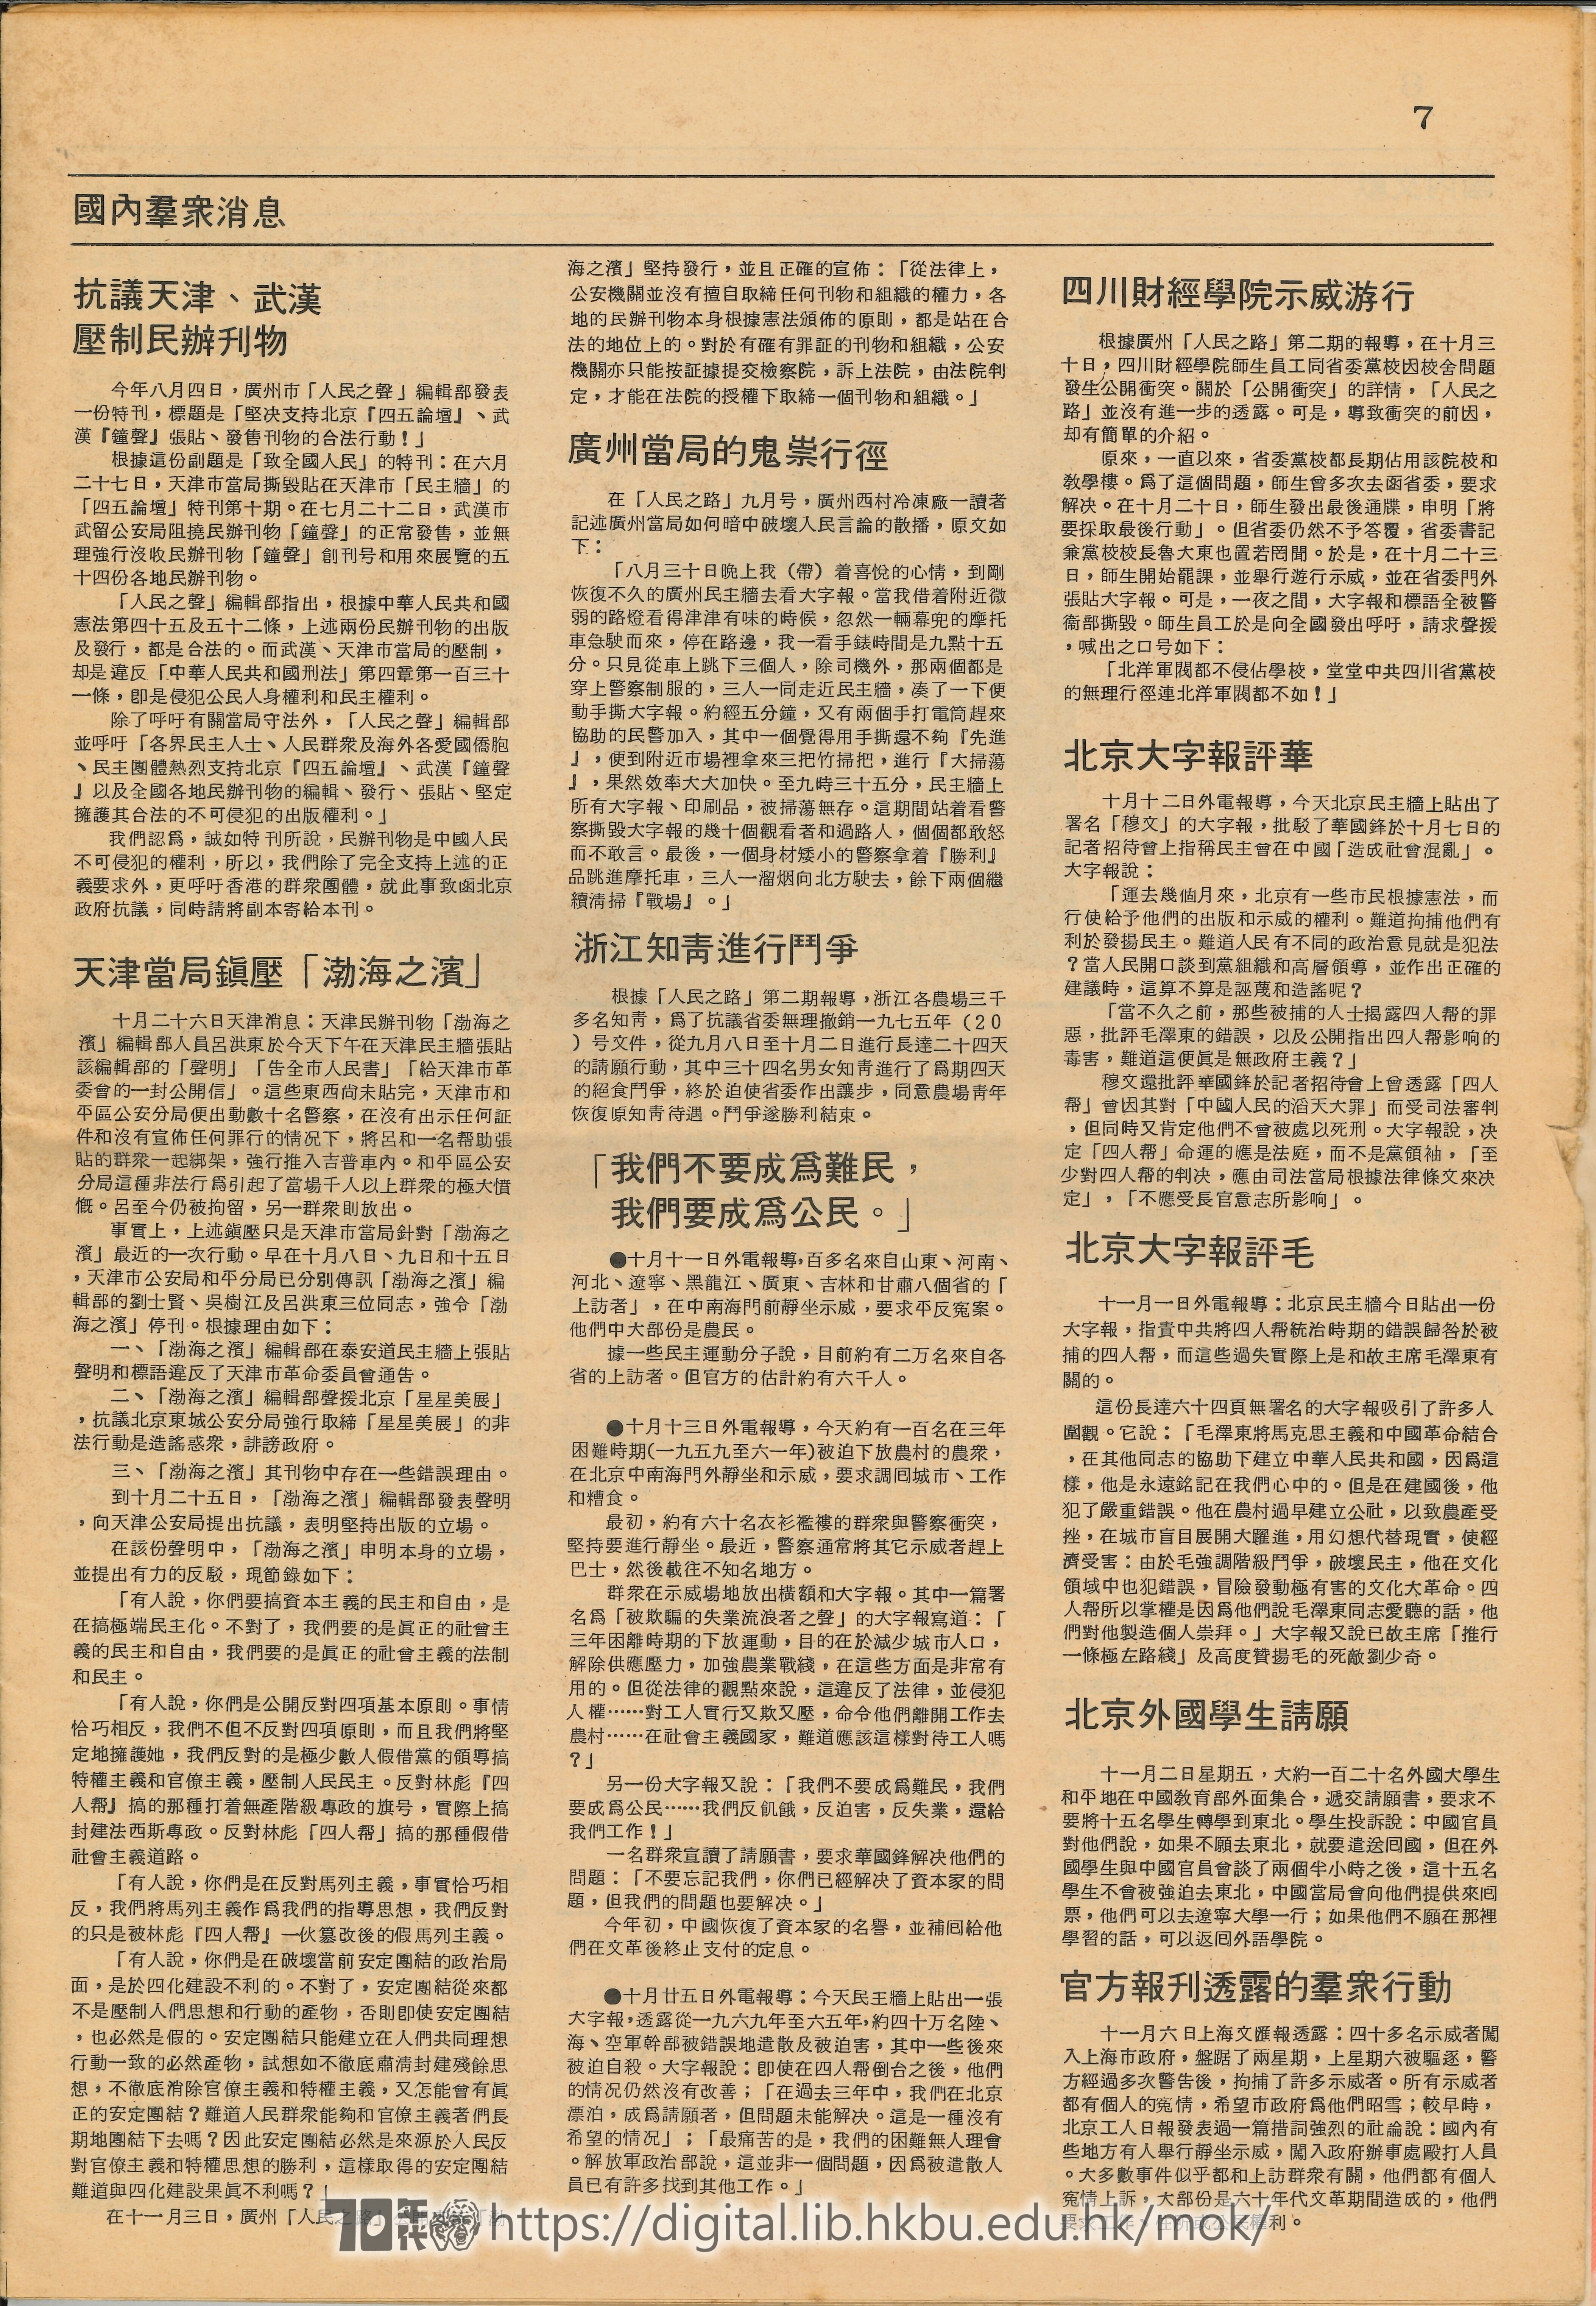  7 國內羣眾消息- 抗議天津、武漢壓制民辦刊物  